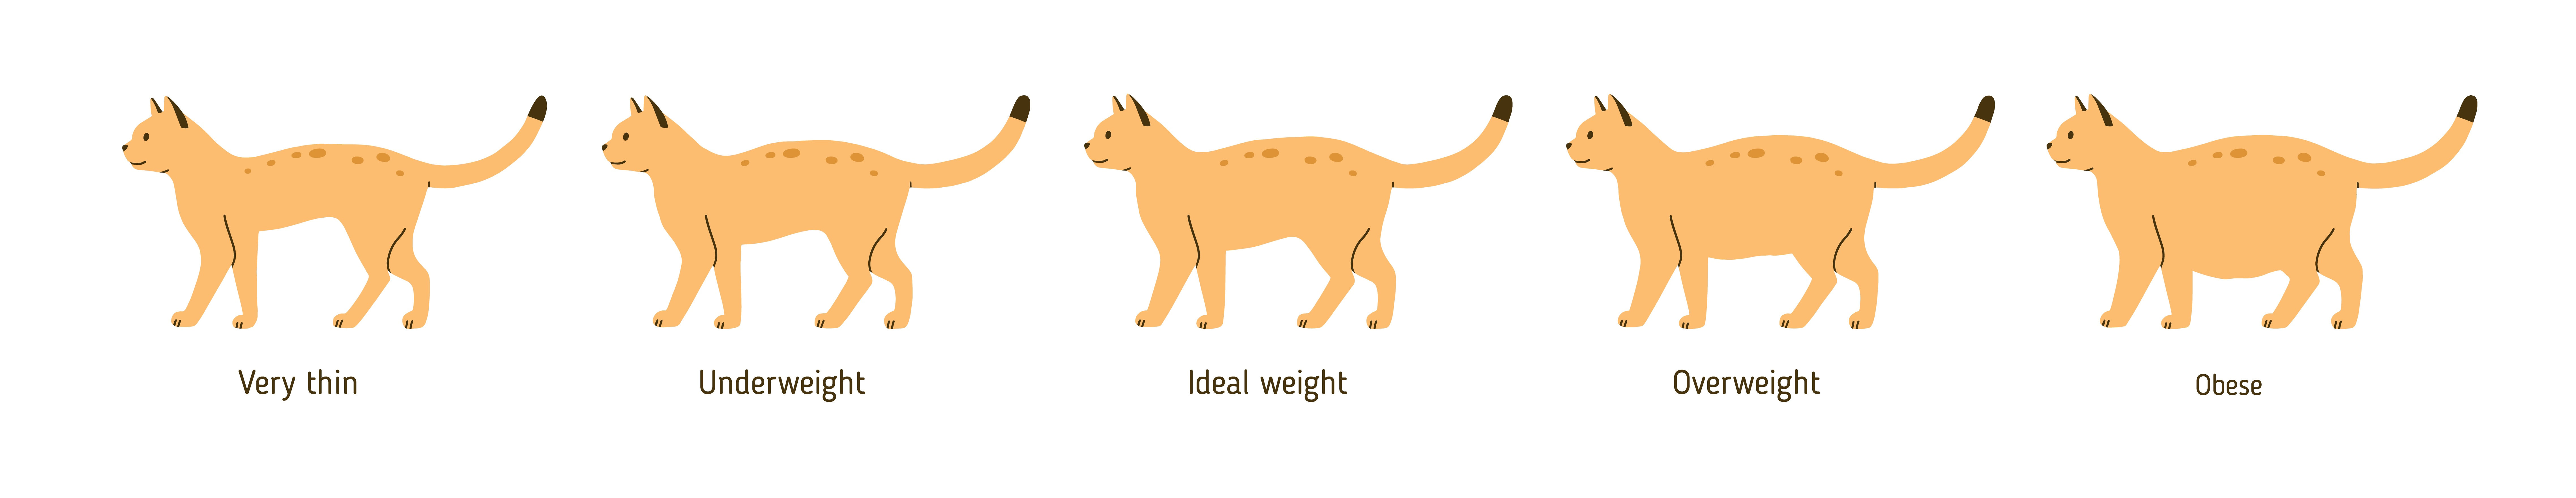 Overweight cat chart, Seattle Vet 